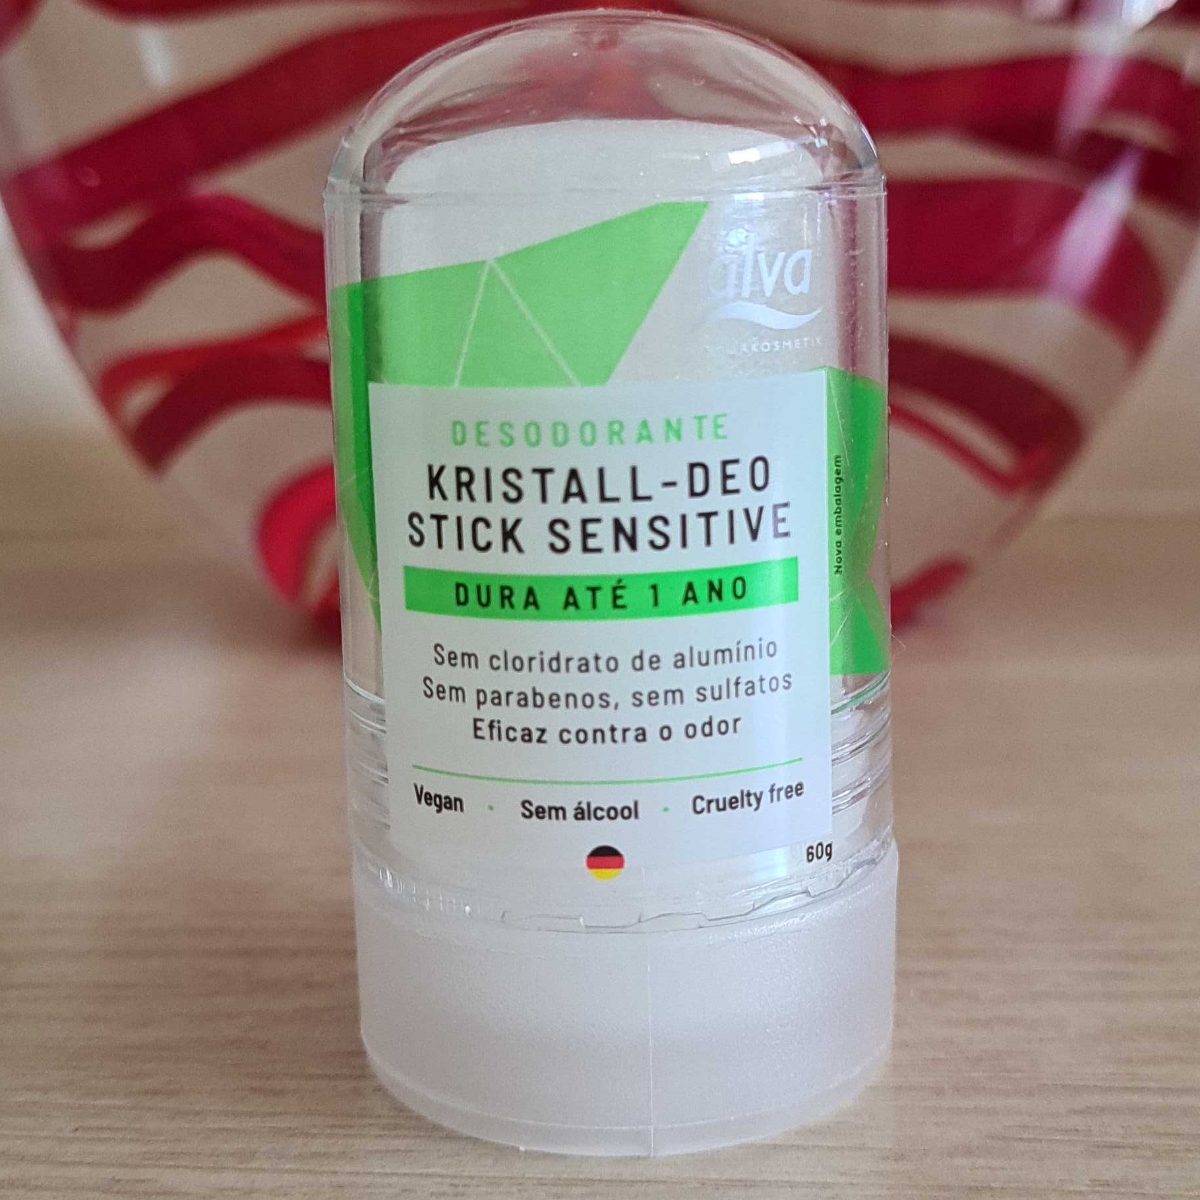 Alva Desodorante Kristall-Deo stick sensitive Reviews | abillion